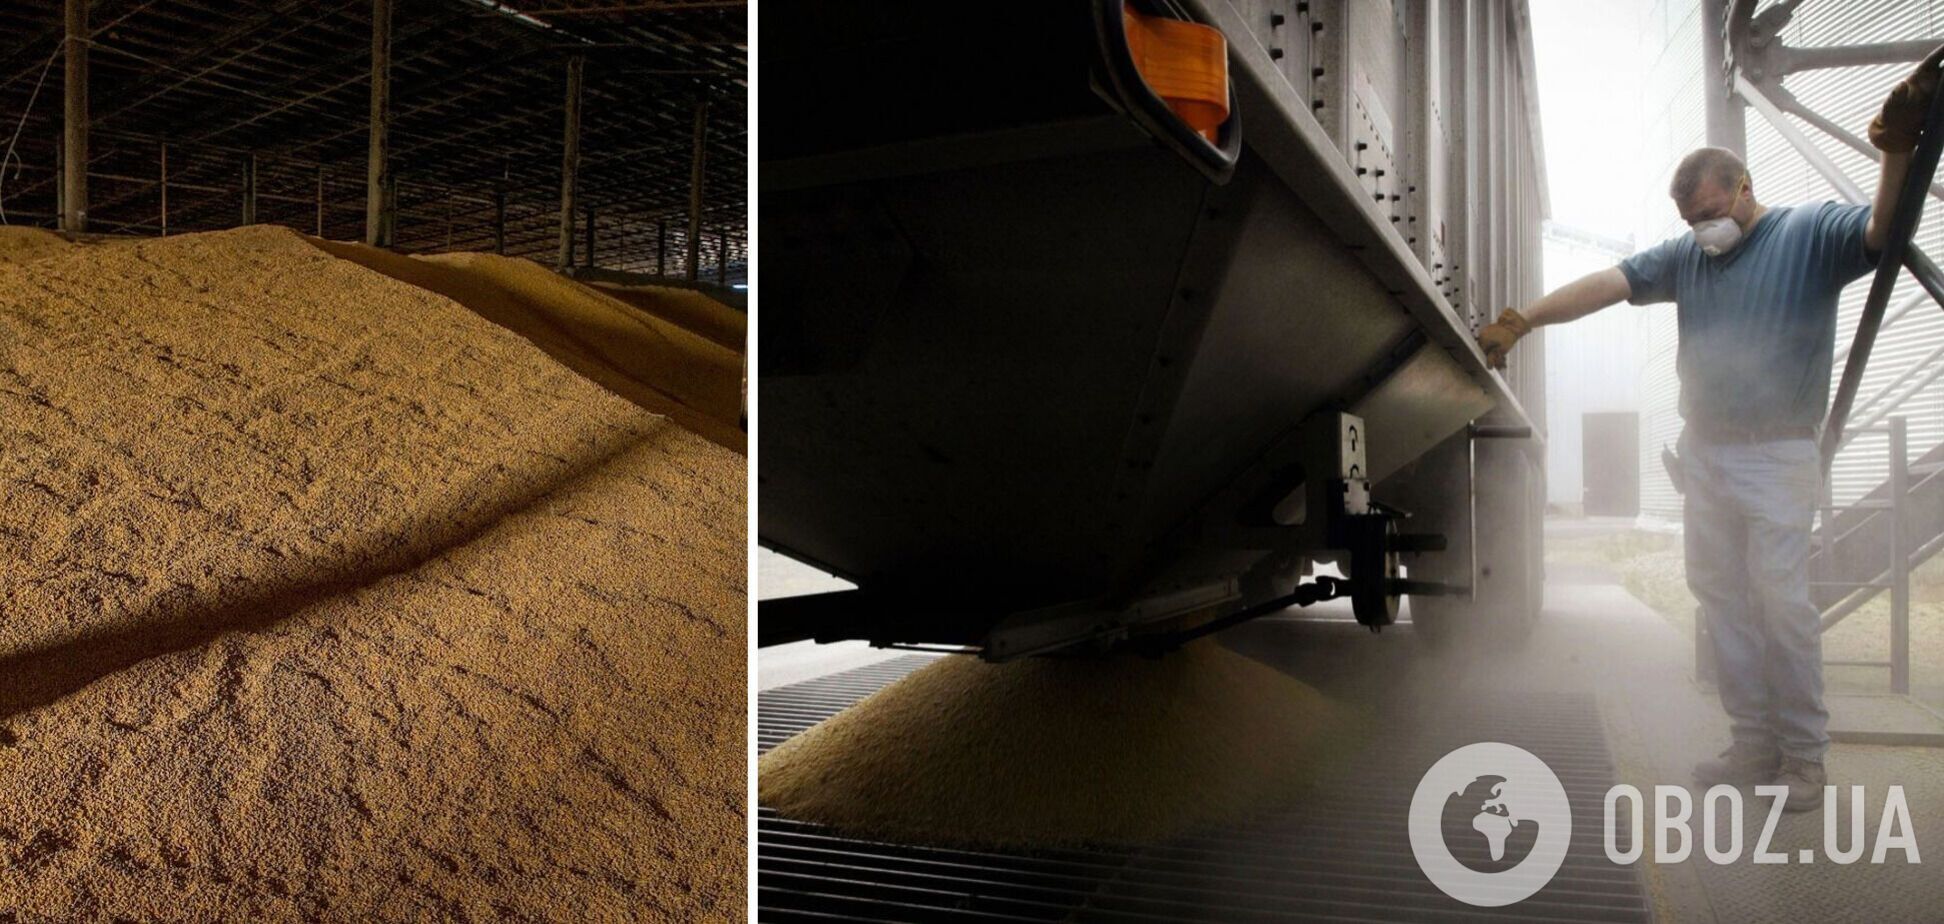 Краденное зерно теперь вывозят из Украины на товарняках